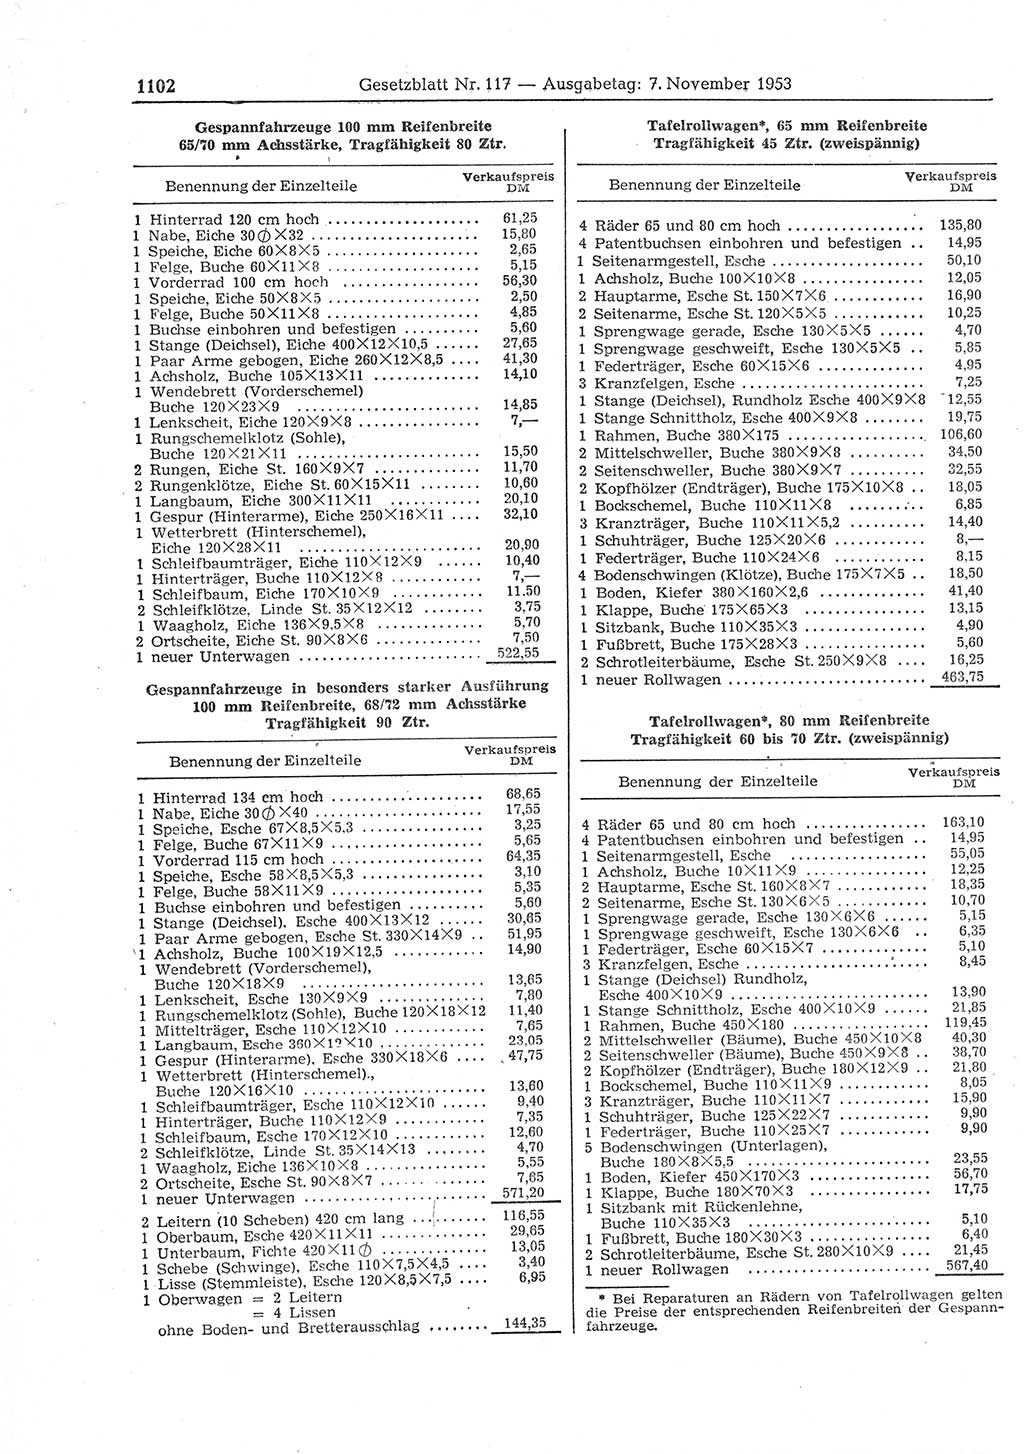 Gesetzblatt (GBl.) der Deutschen Demokratischen Republik (DDR) 1953, Seite 1102 (GBl. DDR 1953, S. 1102)